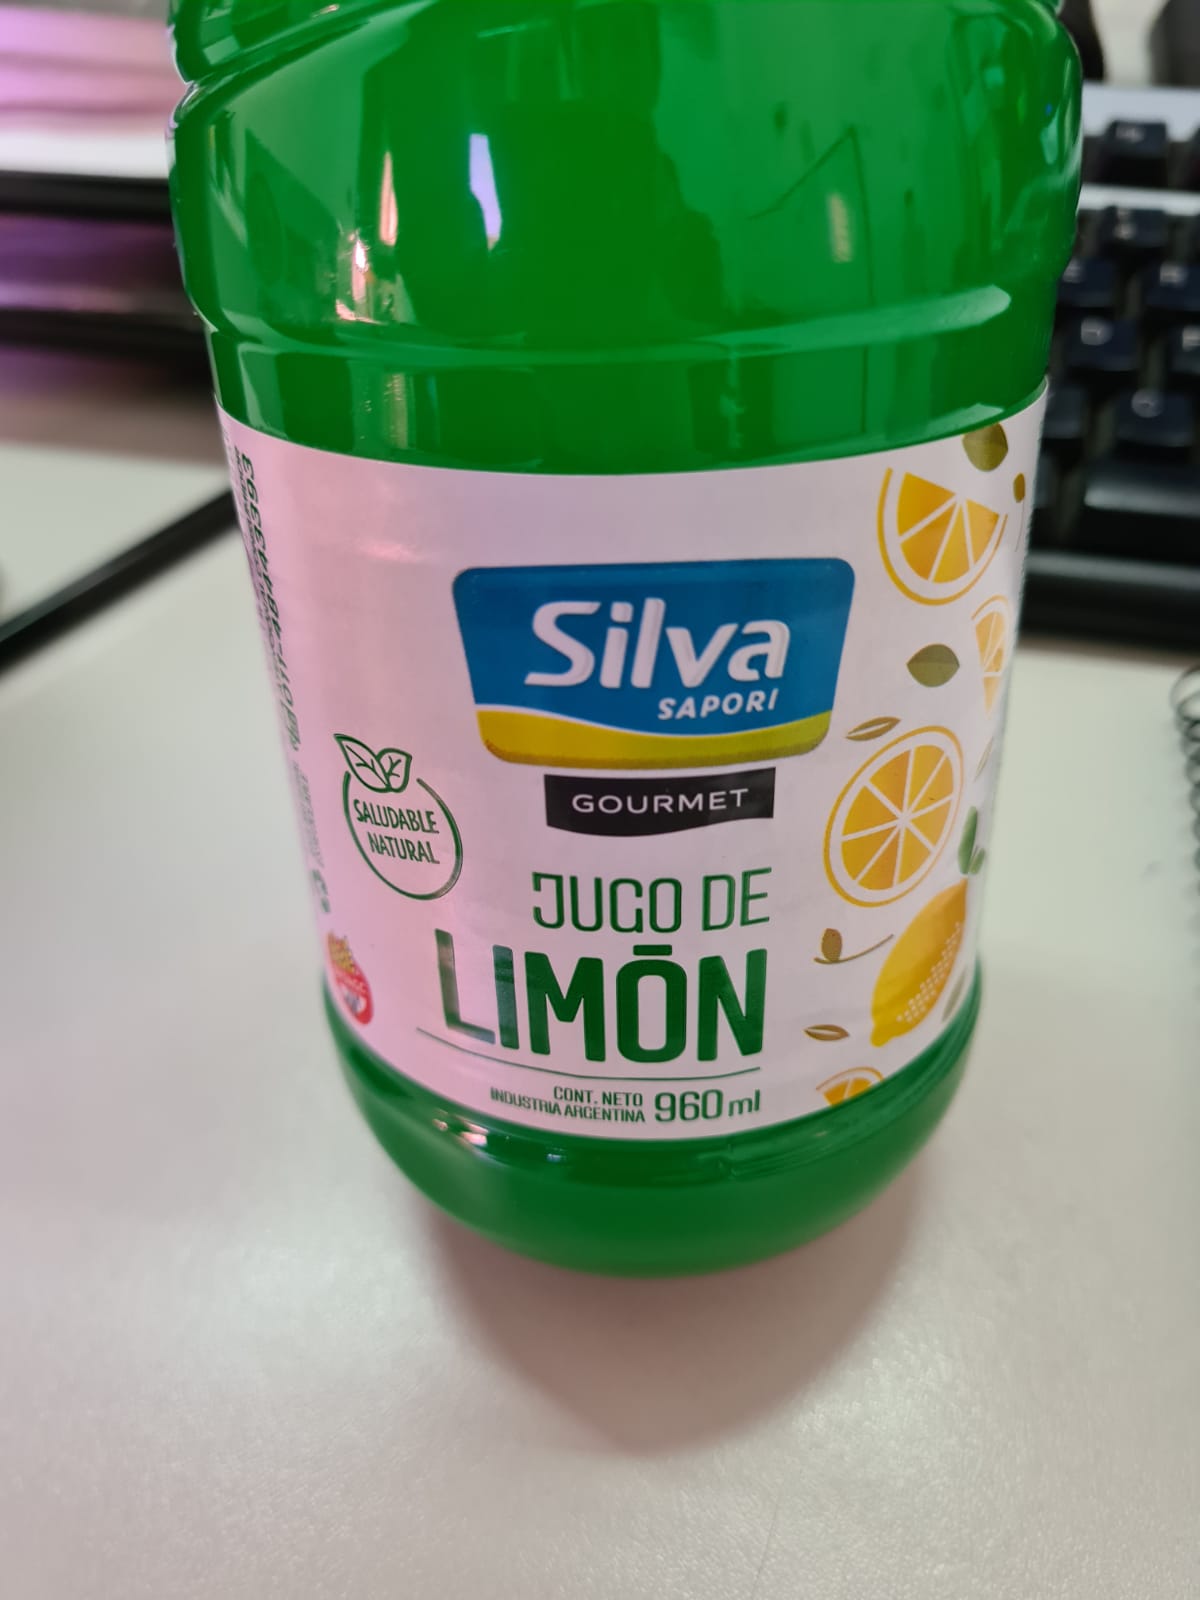 Botella de jugo de limón Silva